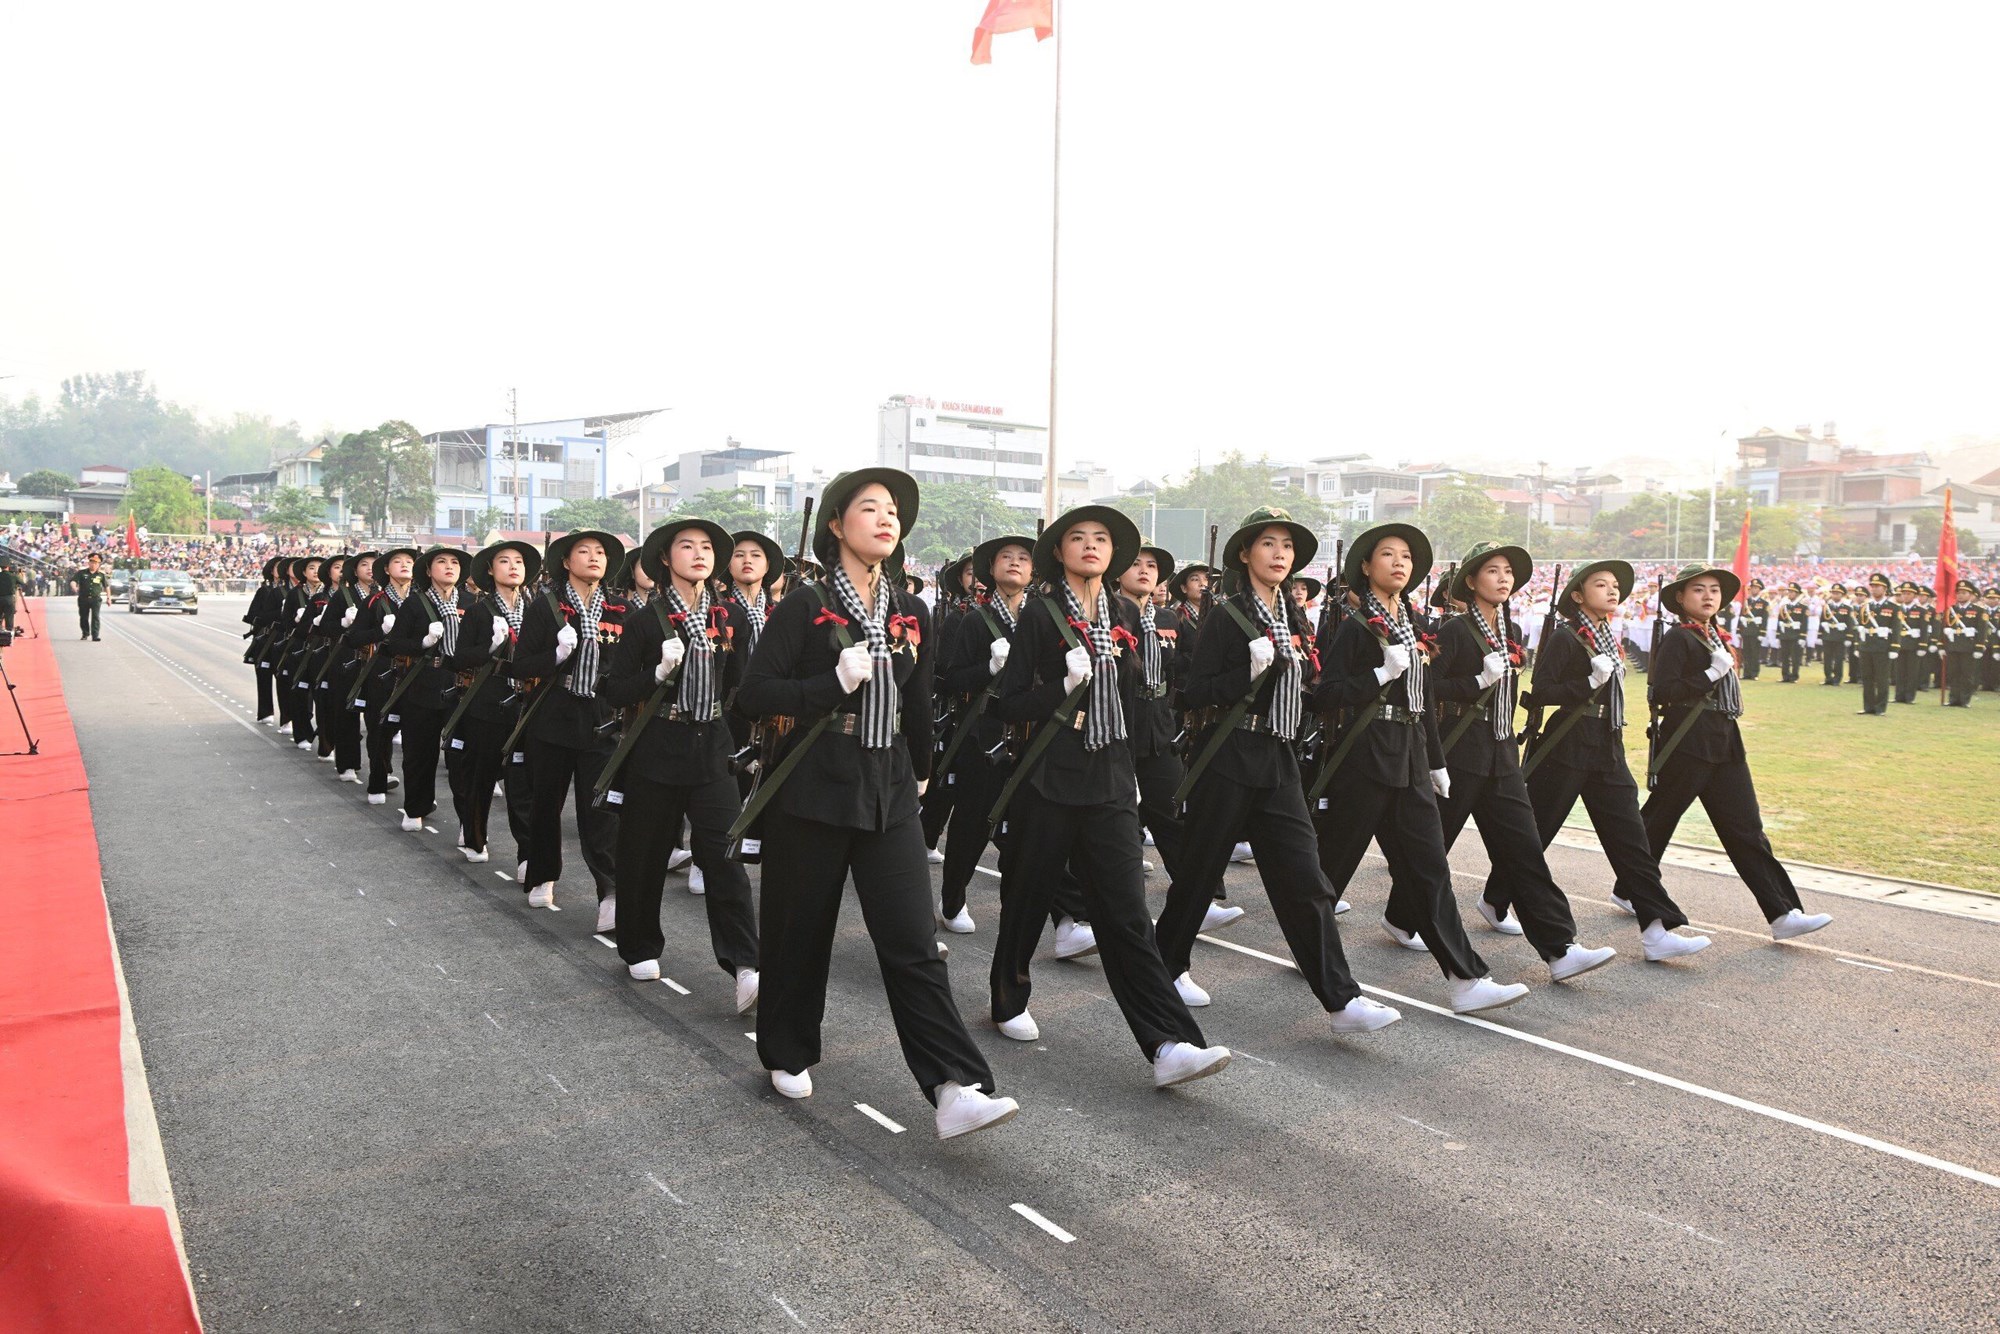 Hợp luyện các lực lượng diễu binh, diễu hành kỷ niệm 70 năm Chiến thắng Điện Biên Phủ - ảnh 7